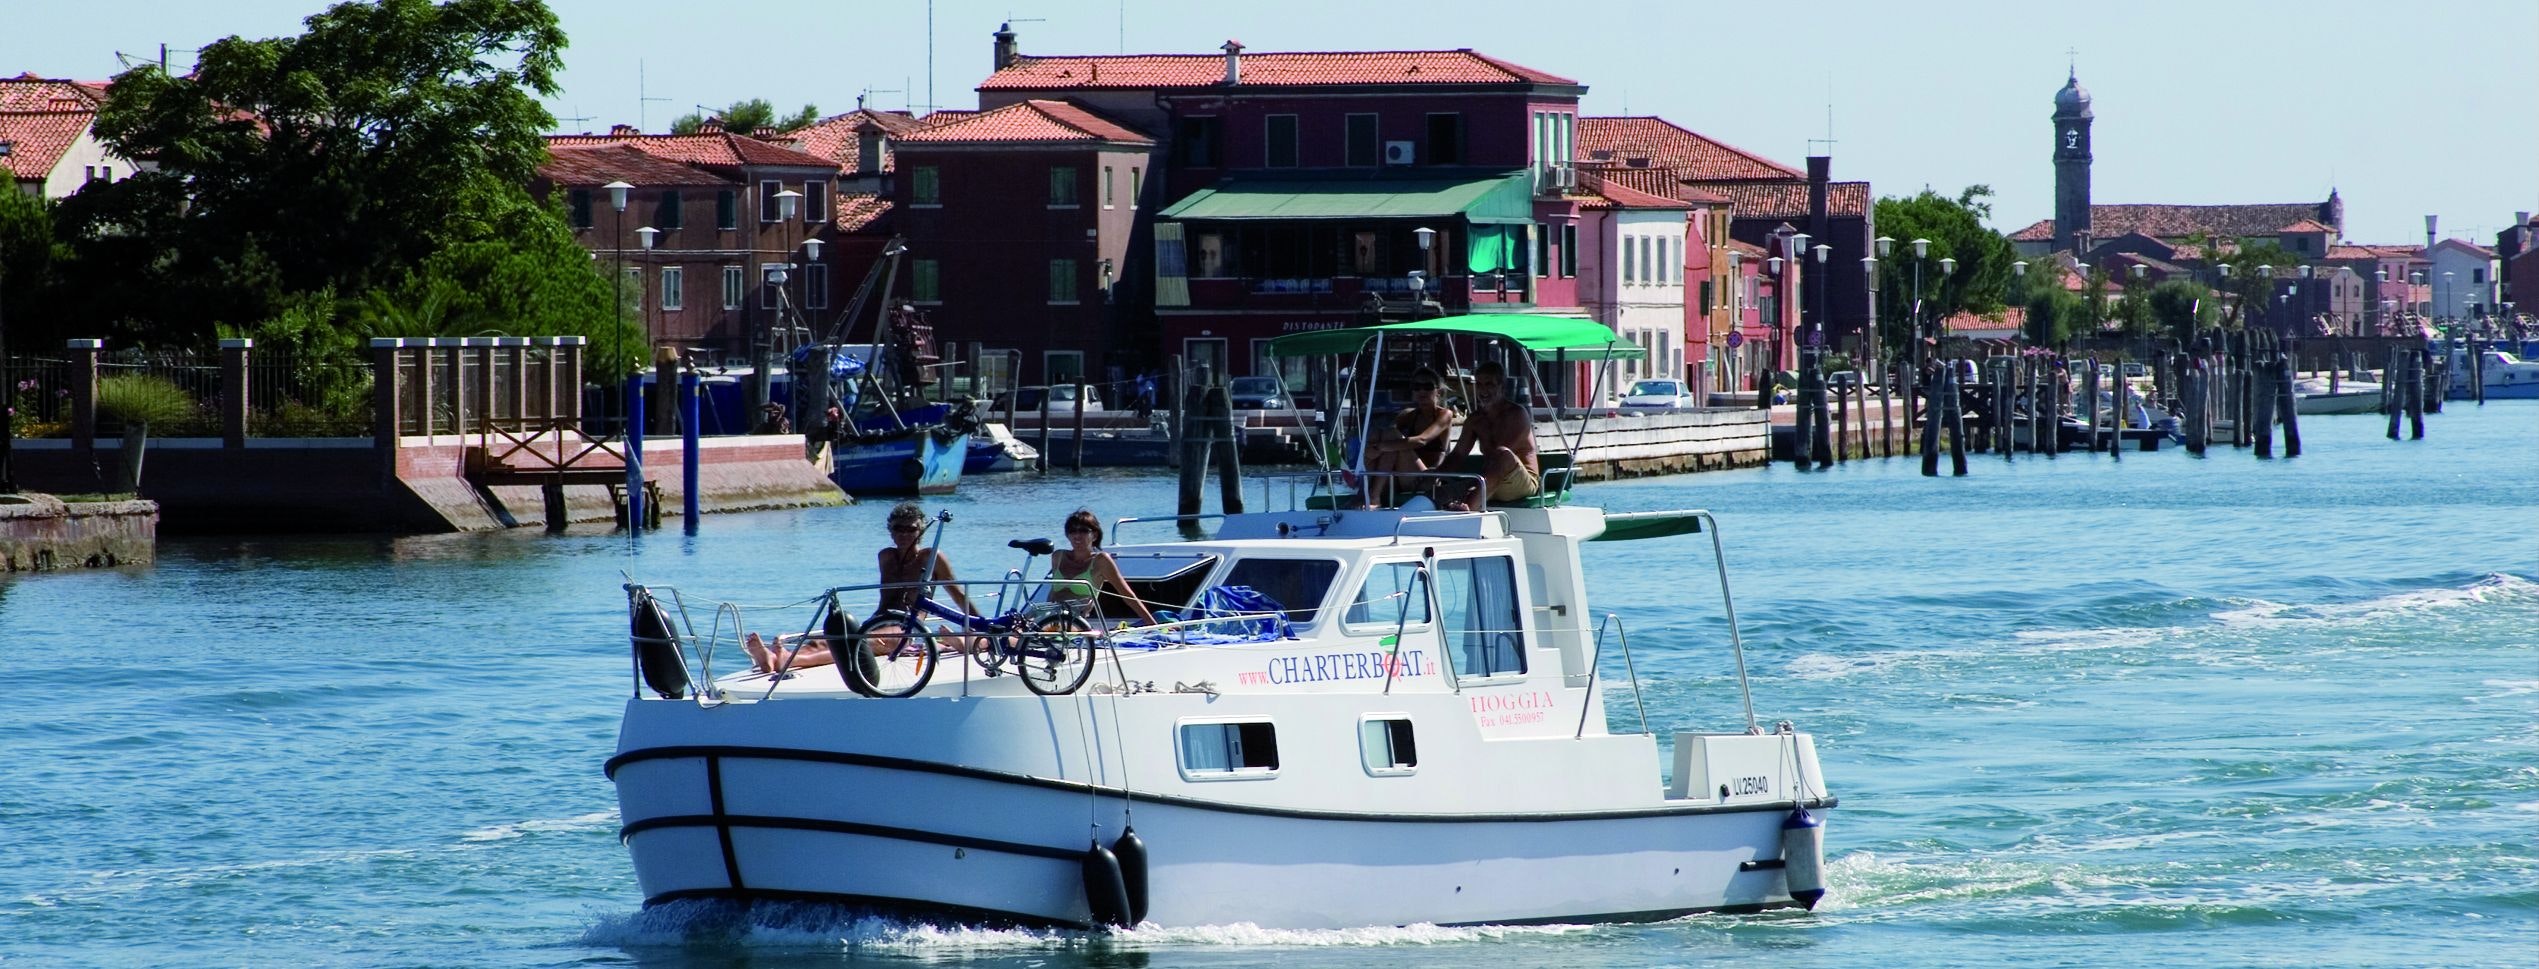 Хората на борда на лодка във венецианската лагуна